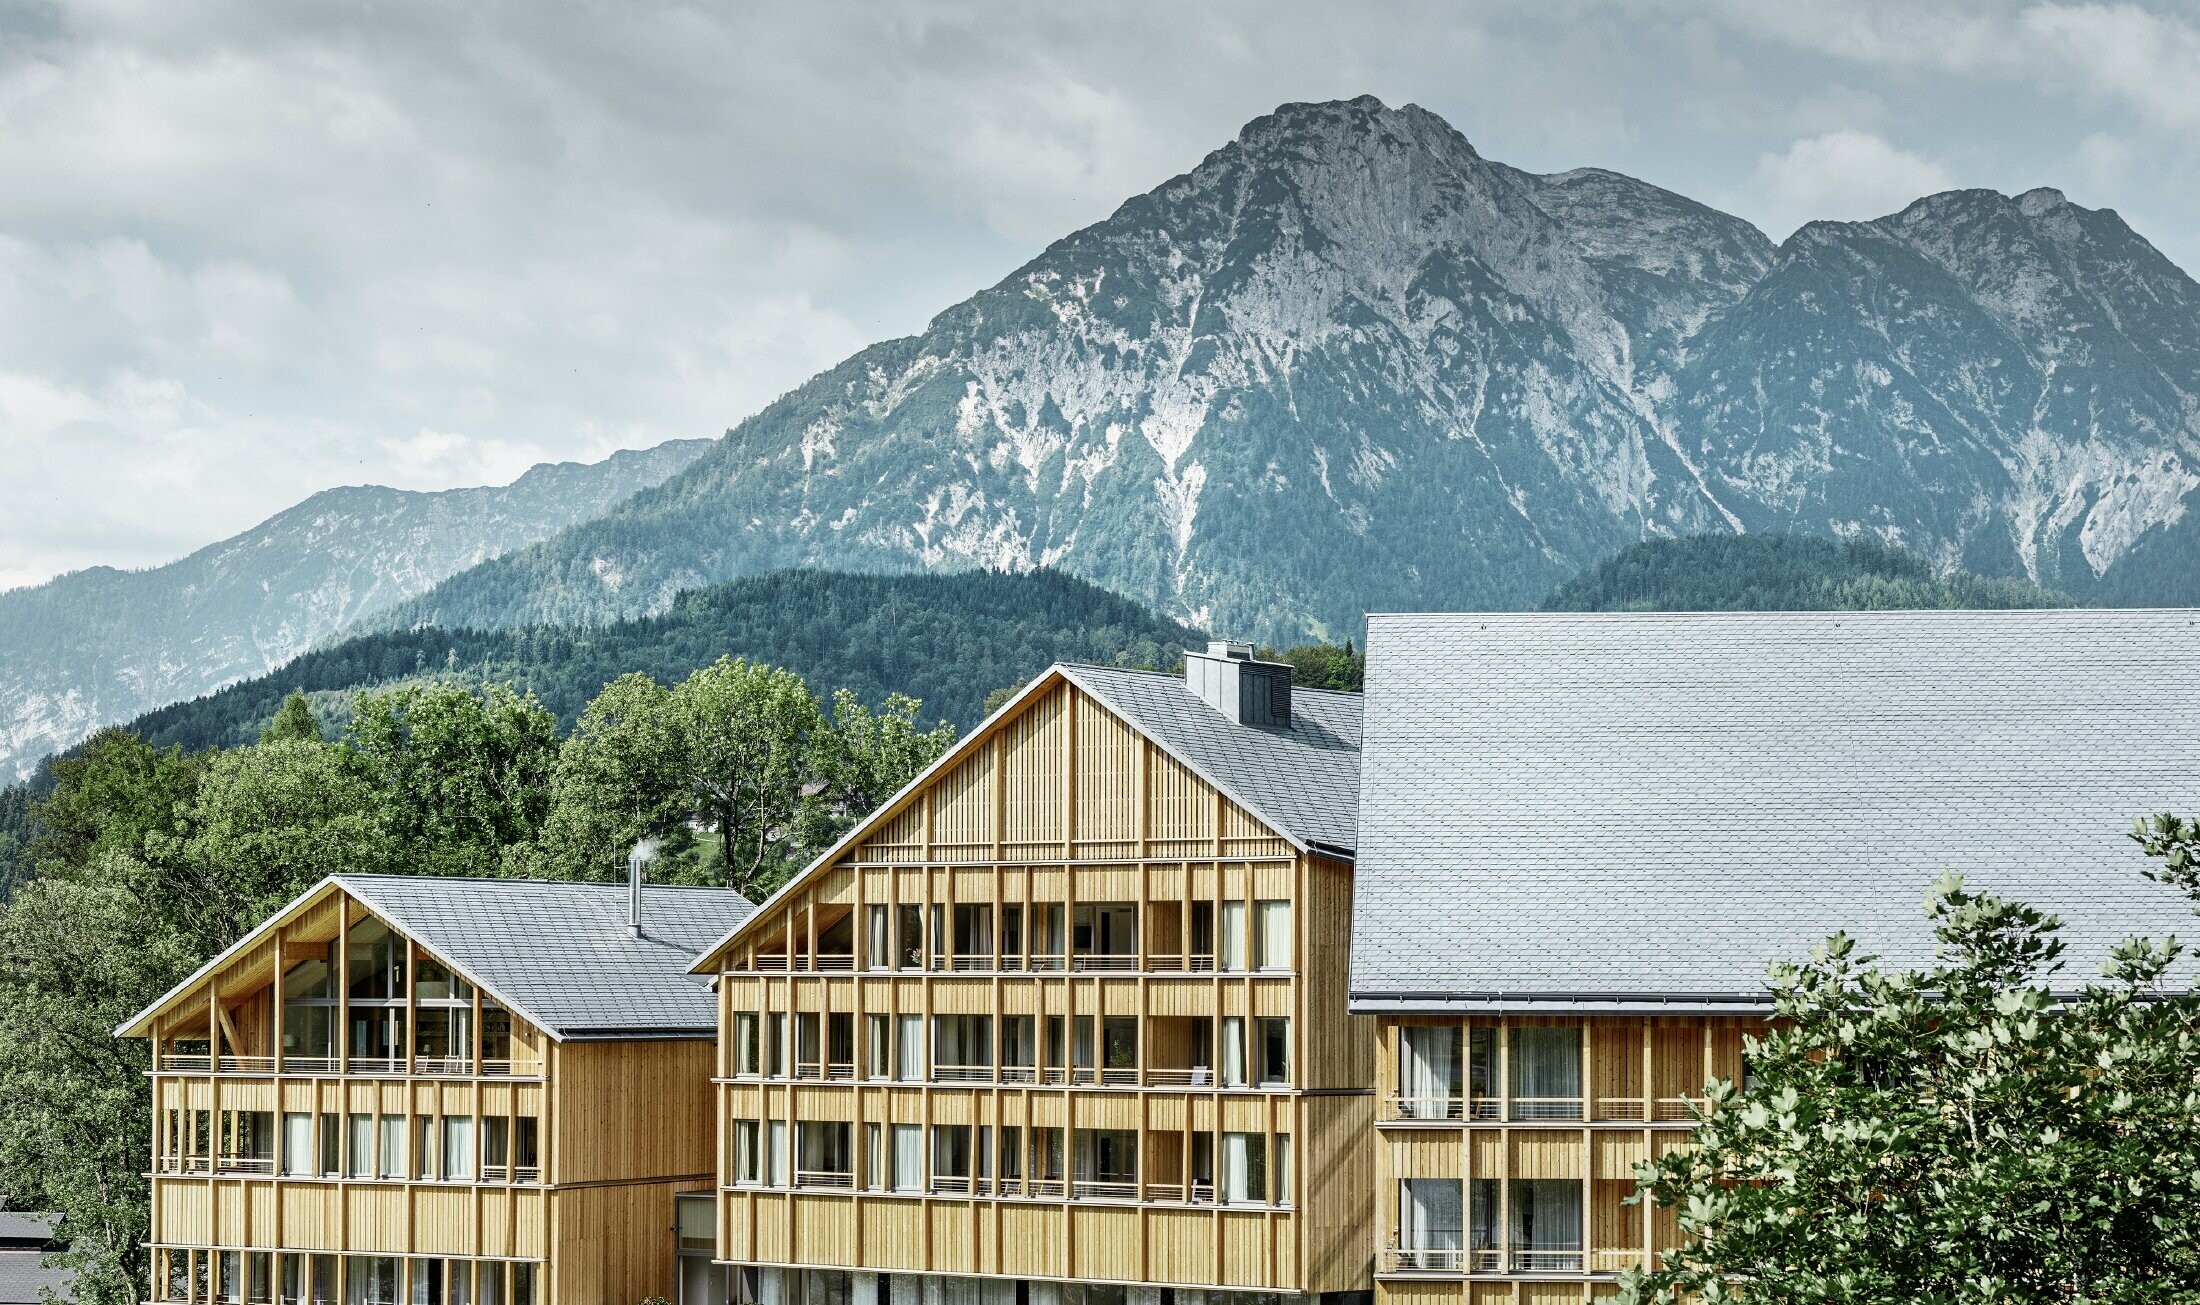 Hotel Vivamayr in Altaussee mit Holzfassade und PREFA Dachschindel Dach